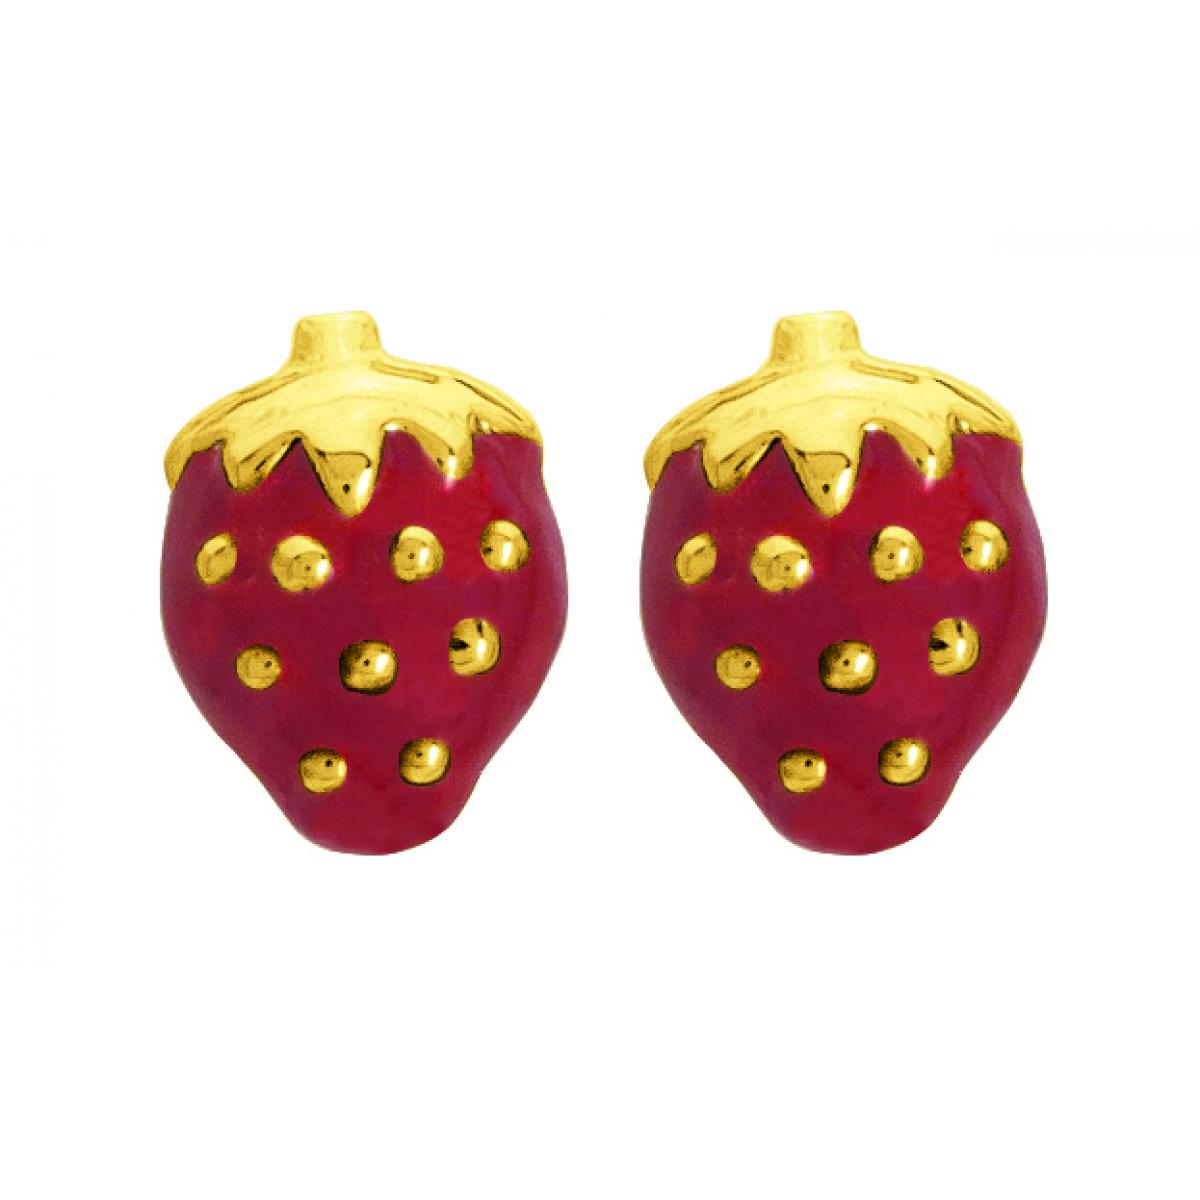 Boucles d'oreilles Fraises laquées rouges or 750/1000 jaune (18K)